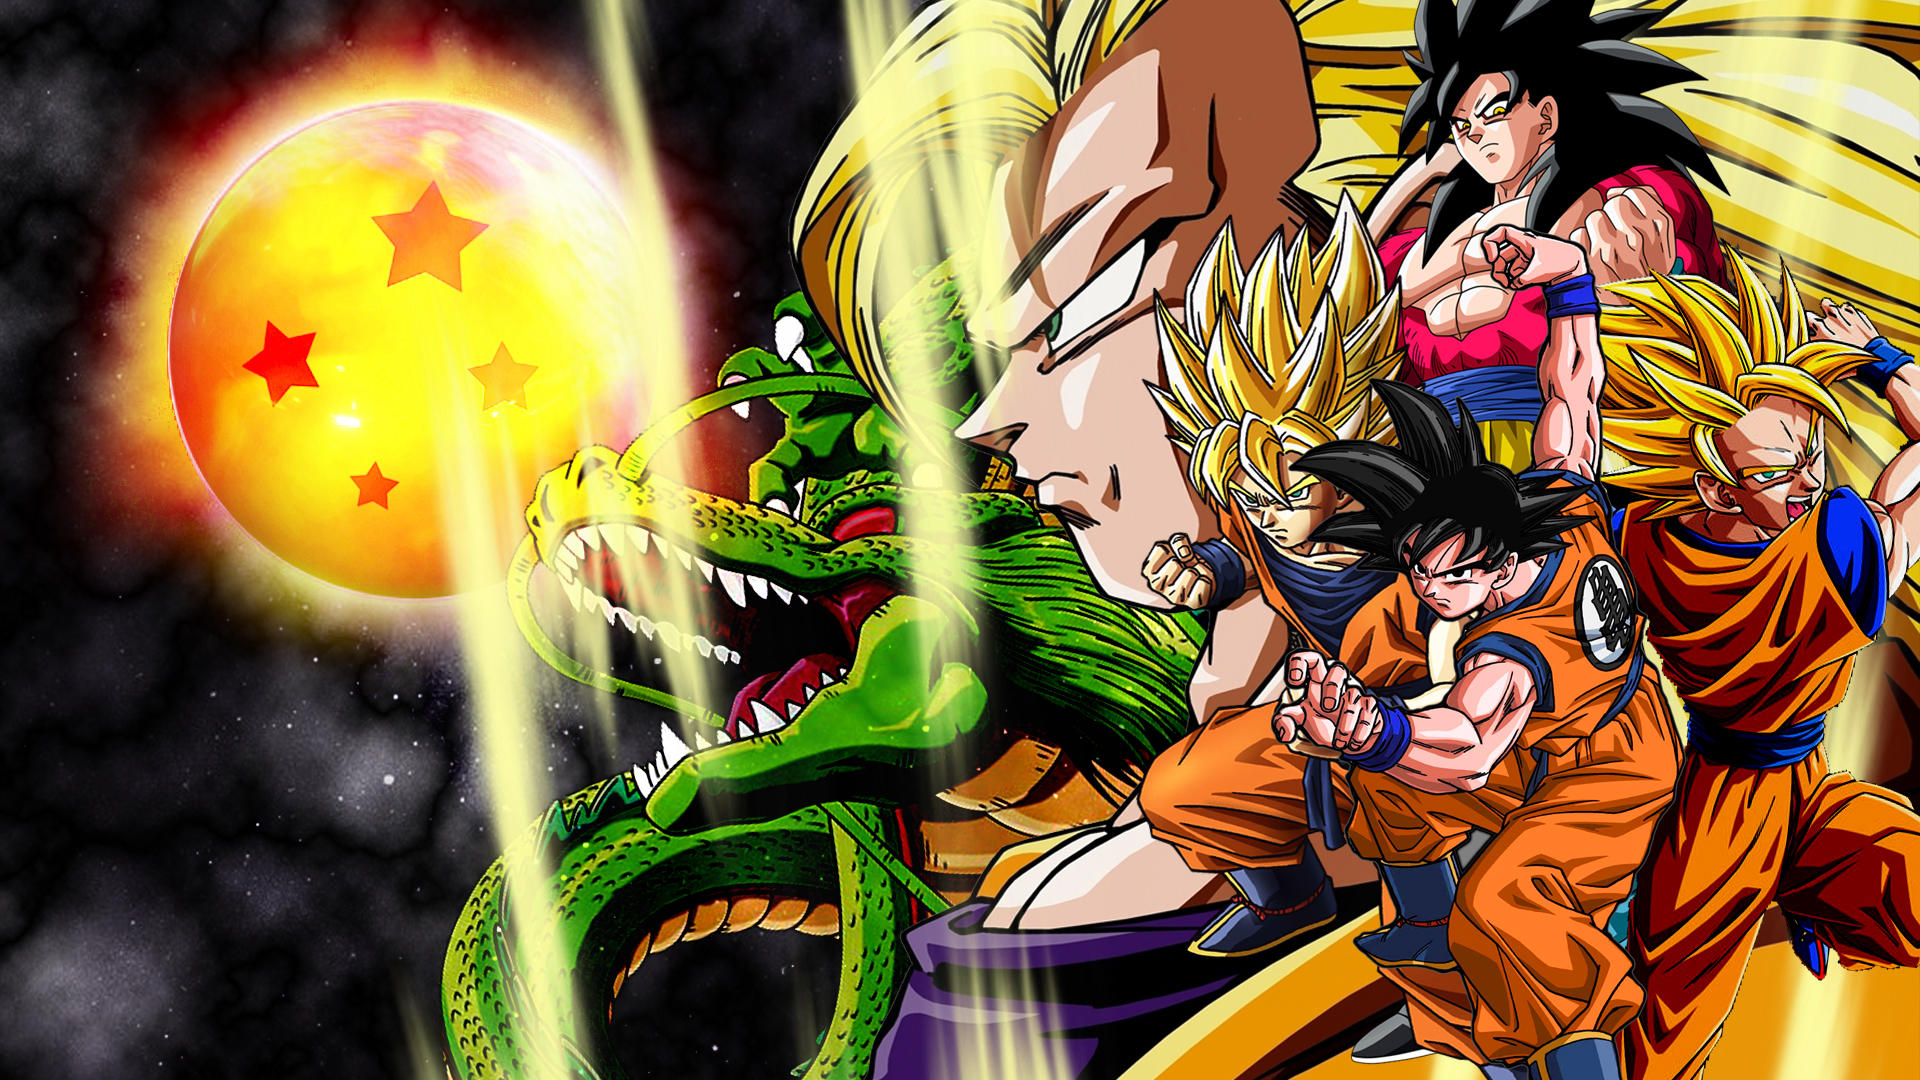 Fondos de Dragon Ball Z Goku Wallpapers para descargar gratis